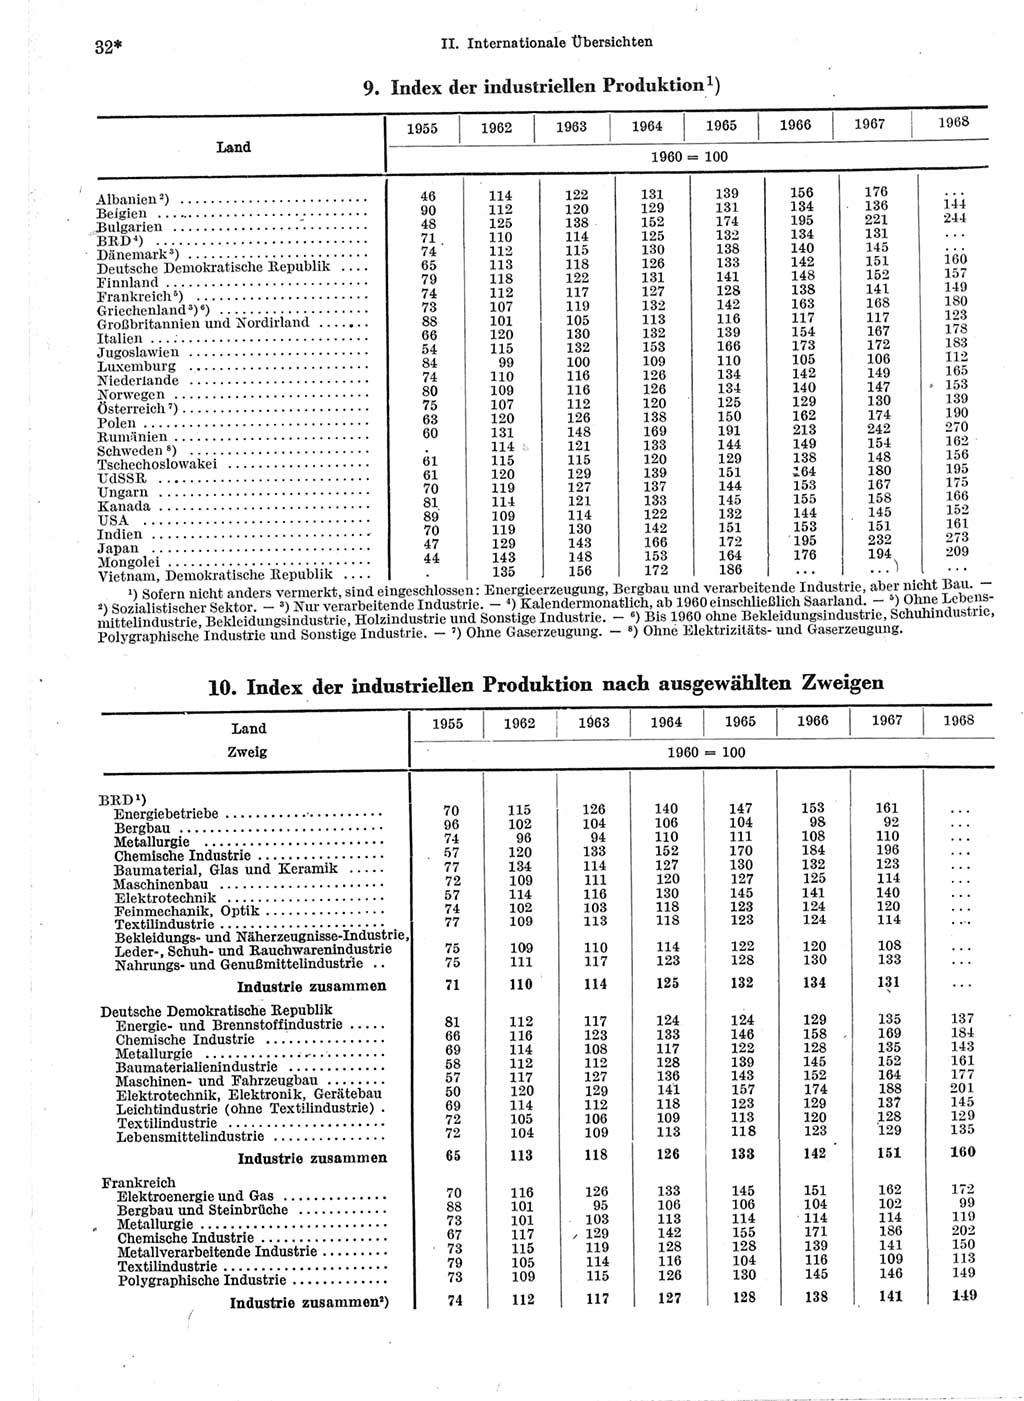 Statistisches Jahrbuch der Deutschen Demokratischen Republik (DDR) 1970, Seite 32 (Stat. Jb. DDR 1970, S. 32)